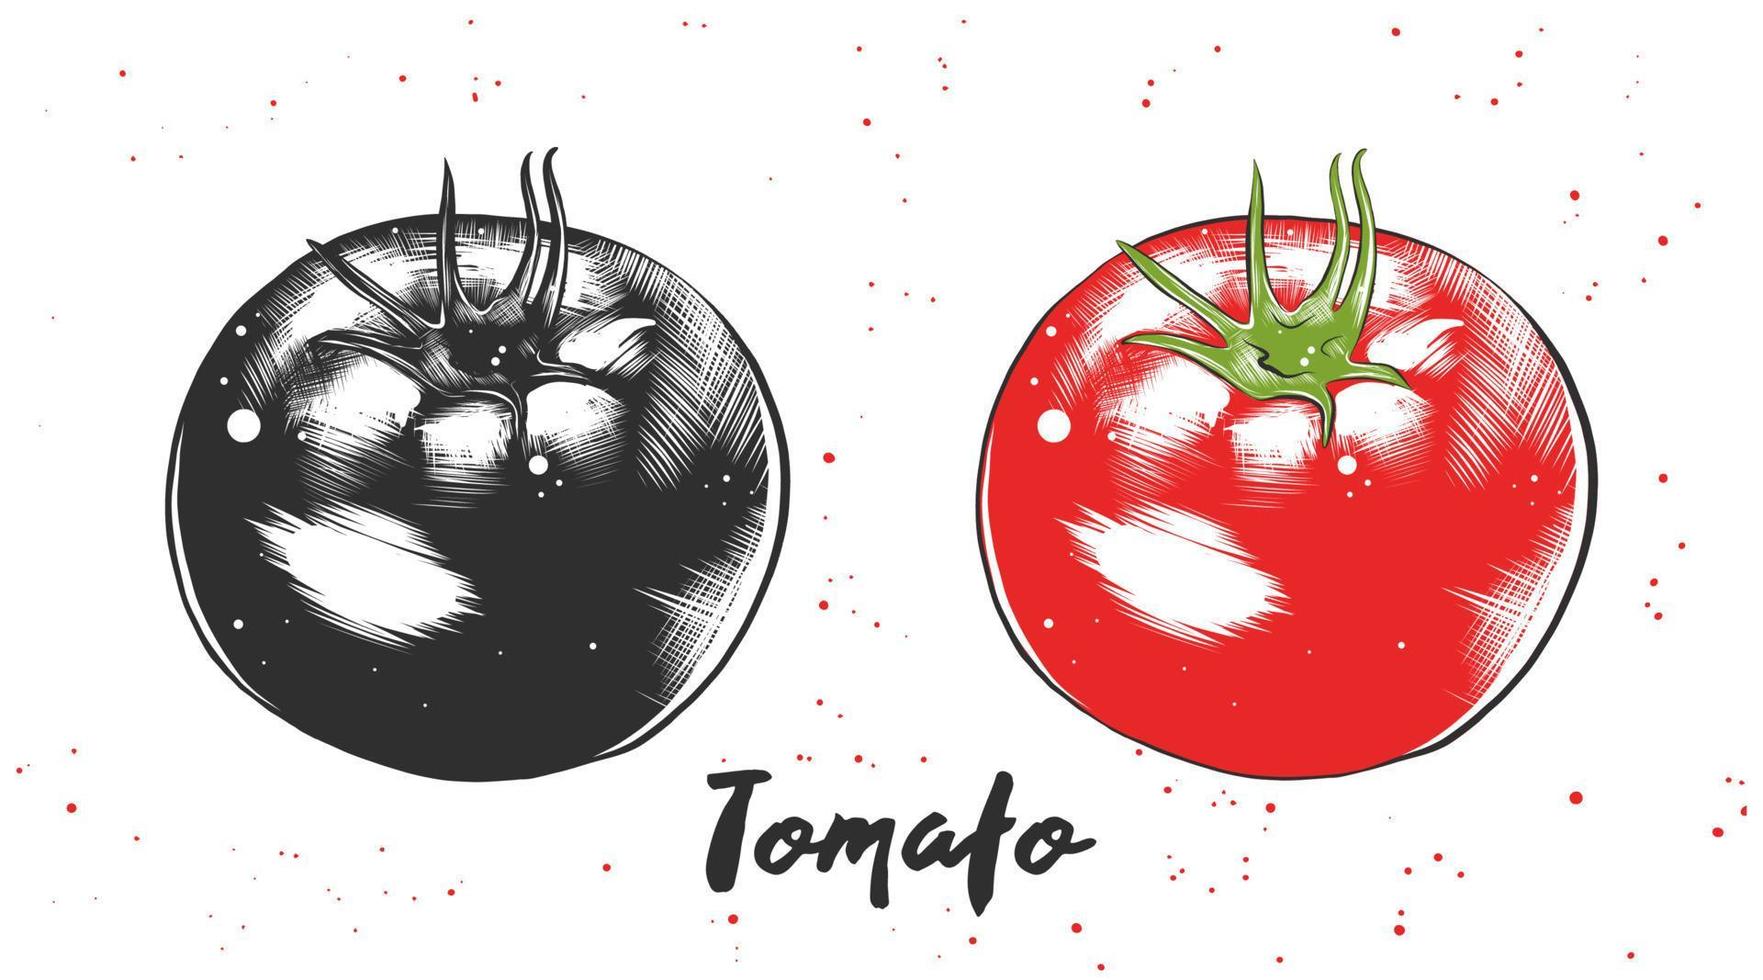 vektor graverat stil illustration för affischer, dekoration och skriva ut. hand dragen skiss av tomat i svartvit och färgrik. detaljerad vegetarian mat teckning.